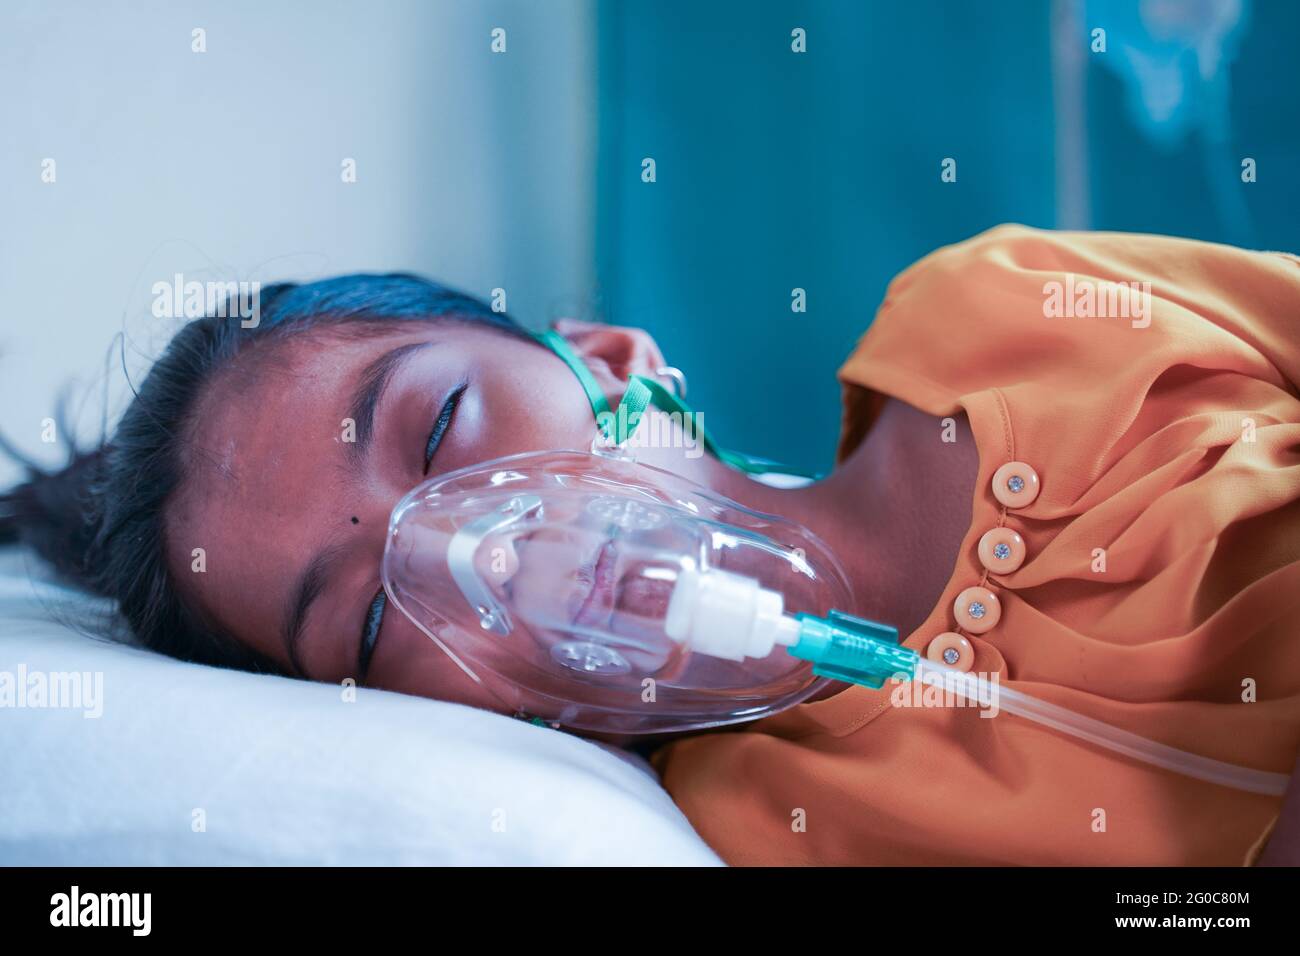 Petite fille enfant respiration sur le masque d'oxygène du ventilateur en raison du coronavirus covid-19 essoufflement ou infection de dyspnée - concept d'enfants Banque D'Images